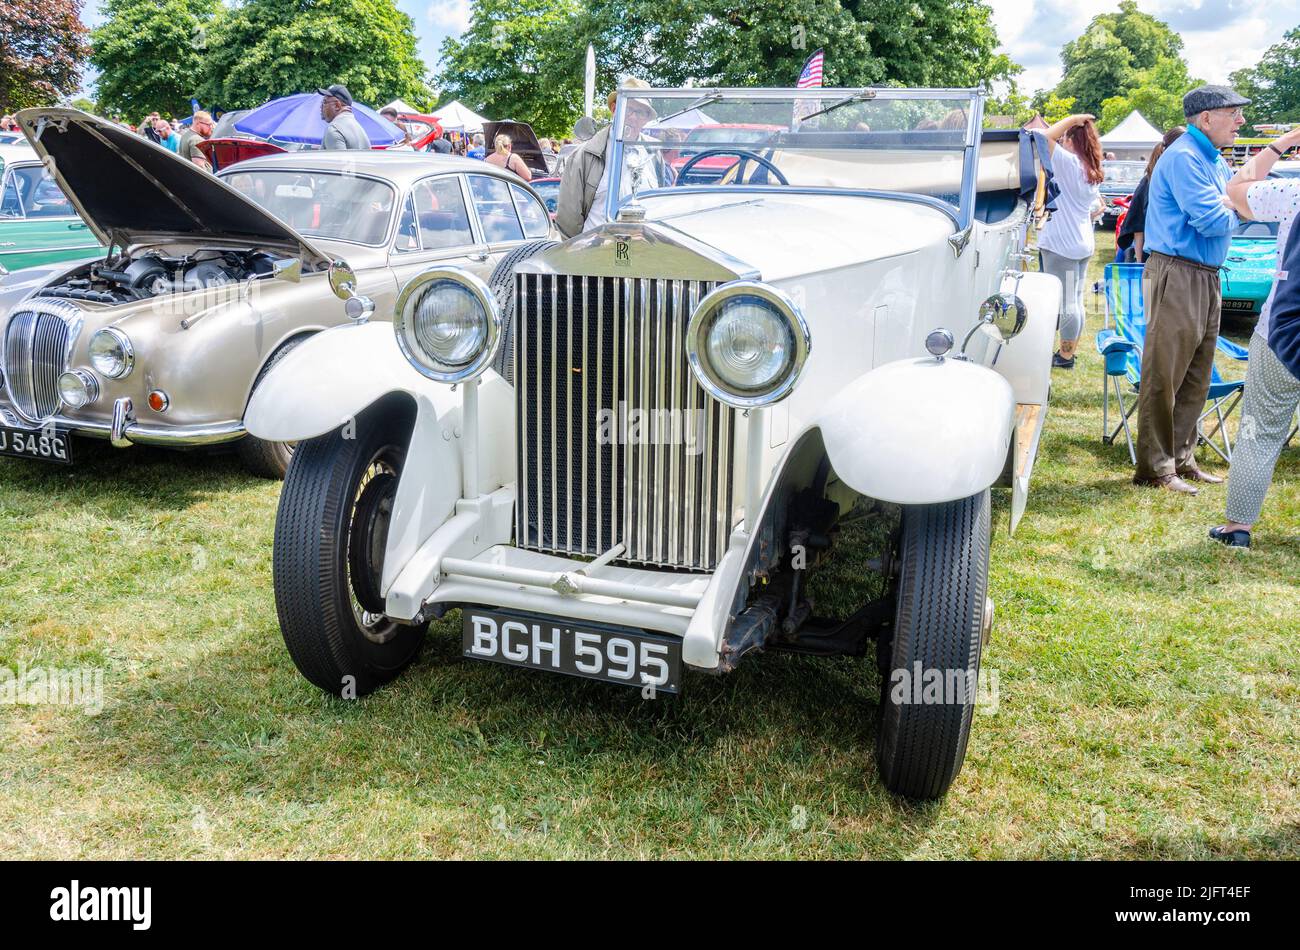 Vista frontale di un'annata 20/25 Rolls Royce bianco in condizioni immacolate al Berkshire Motor Show di Reading, Regno Unito Foto Stock